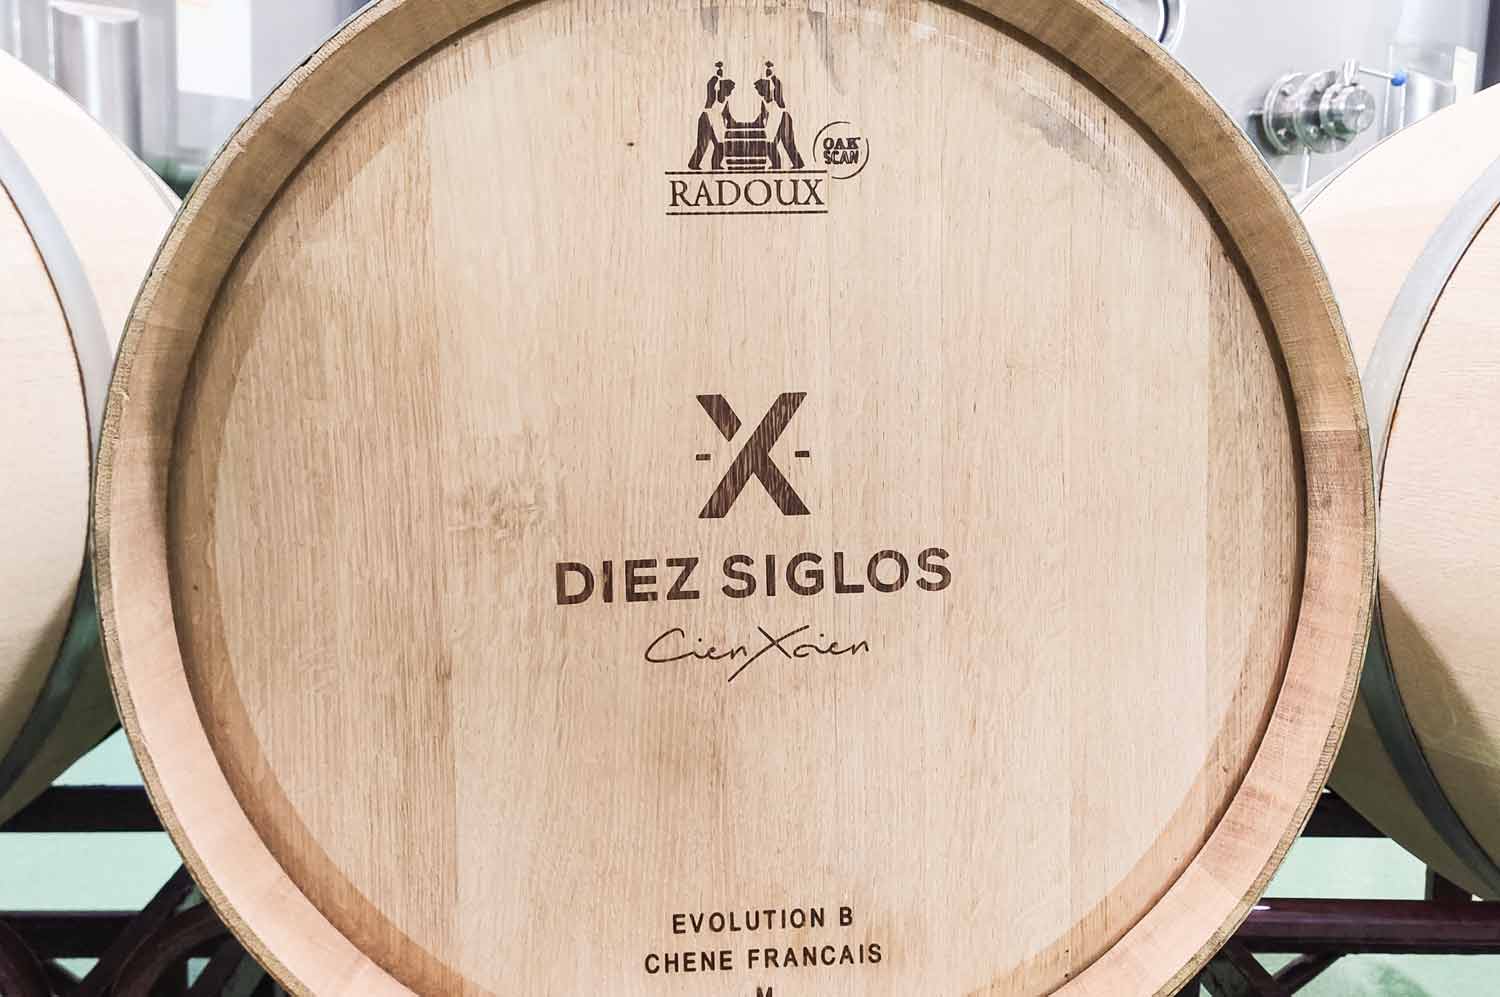 Aus ihrer Liebe zum Land und zum Wein hat es sich eine Gruppe aus 65 Weinbauern zur Aufgabe gemacht, das jahrhundertealte Erbe einer der spannendsten Rebsorten Spaniens am Leben zu erhalten: Verdejo.